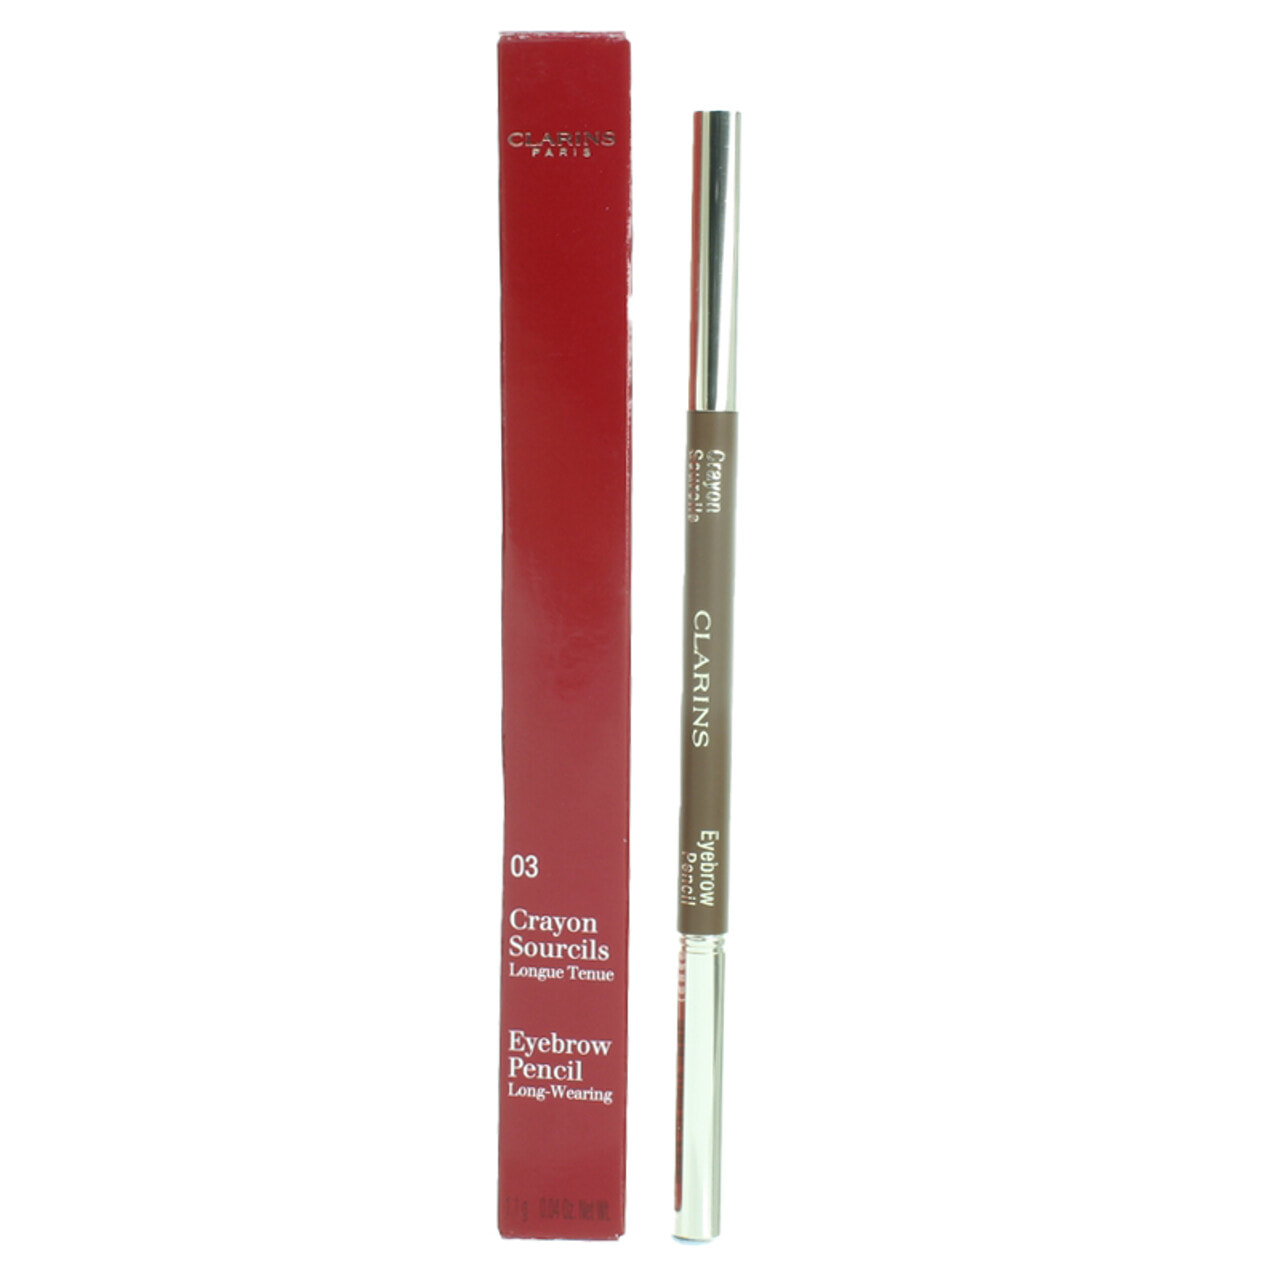 Clarins Eye Brow Pencil - Dark Brown Стойкий карандаш для бровей + кисть для разглаживания волосков 1,3 г